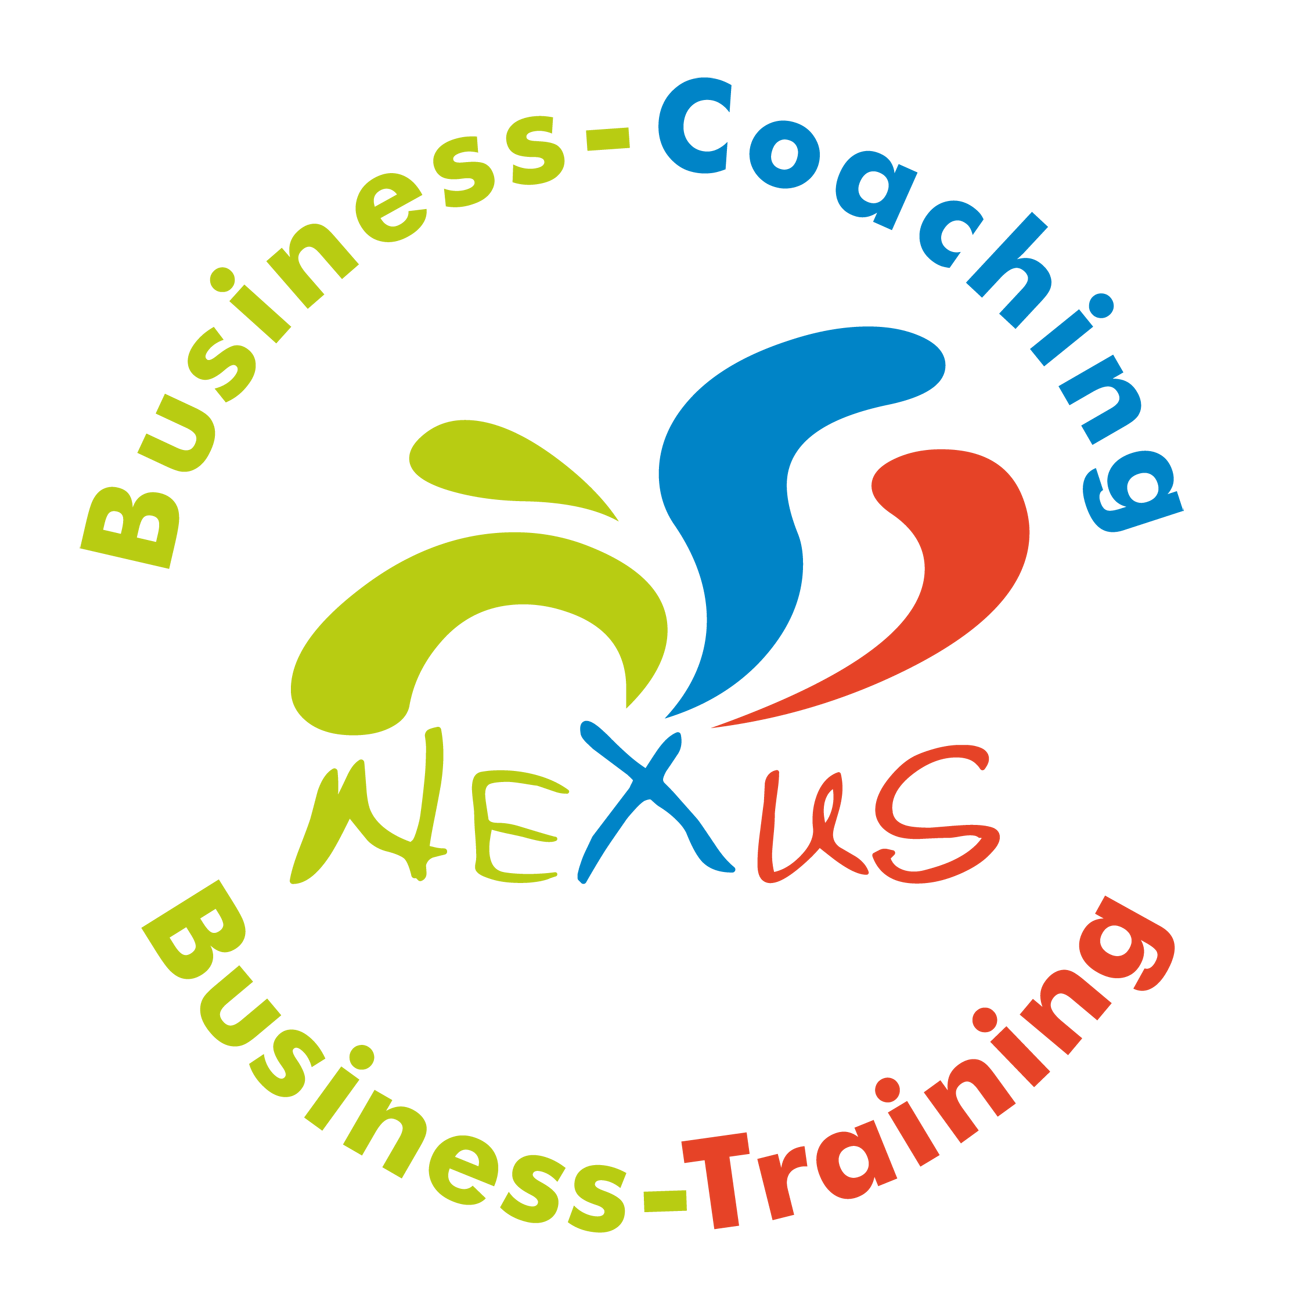 Business-Coaching Griesheim, Business-Einzelcoaching, Business-Training, Führungskräfte-Coaching Griesheim, Führungskräfte-Training, Kommunikationstraining, Persönlichkeitstraining